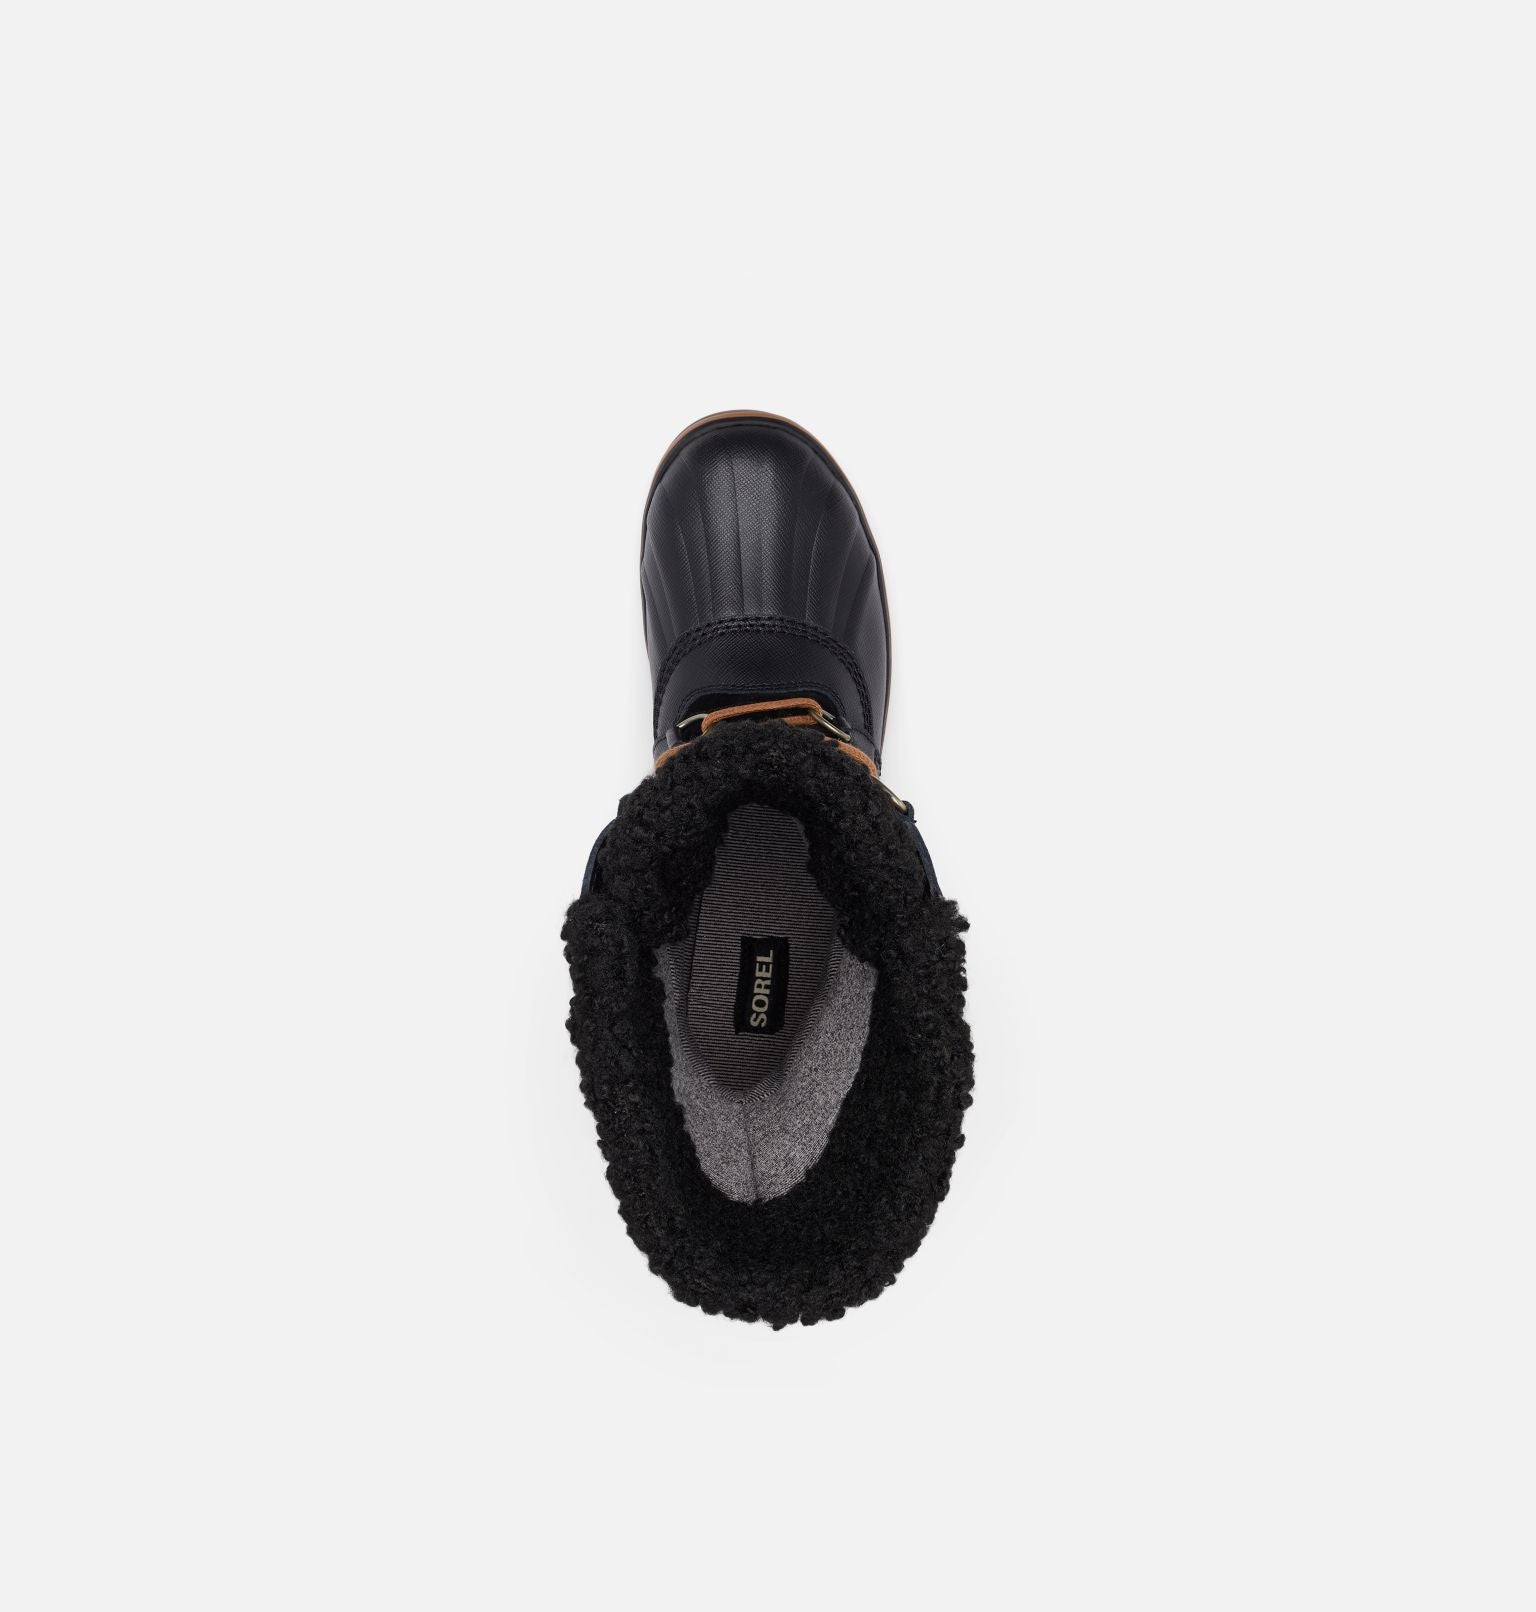 Sorel Women's Tofino II Waterproof Boots Black Gum